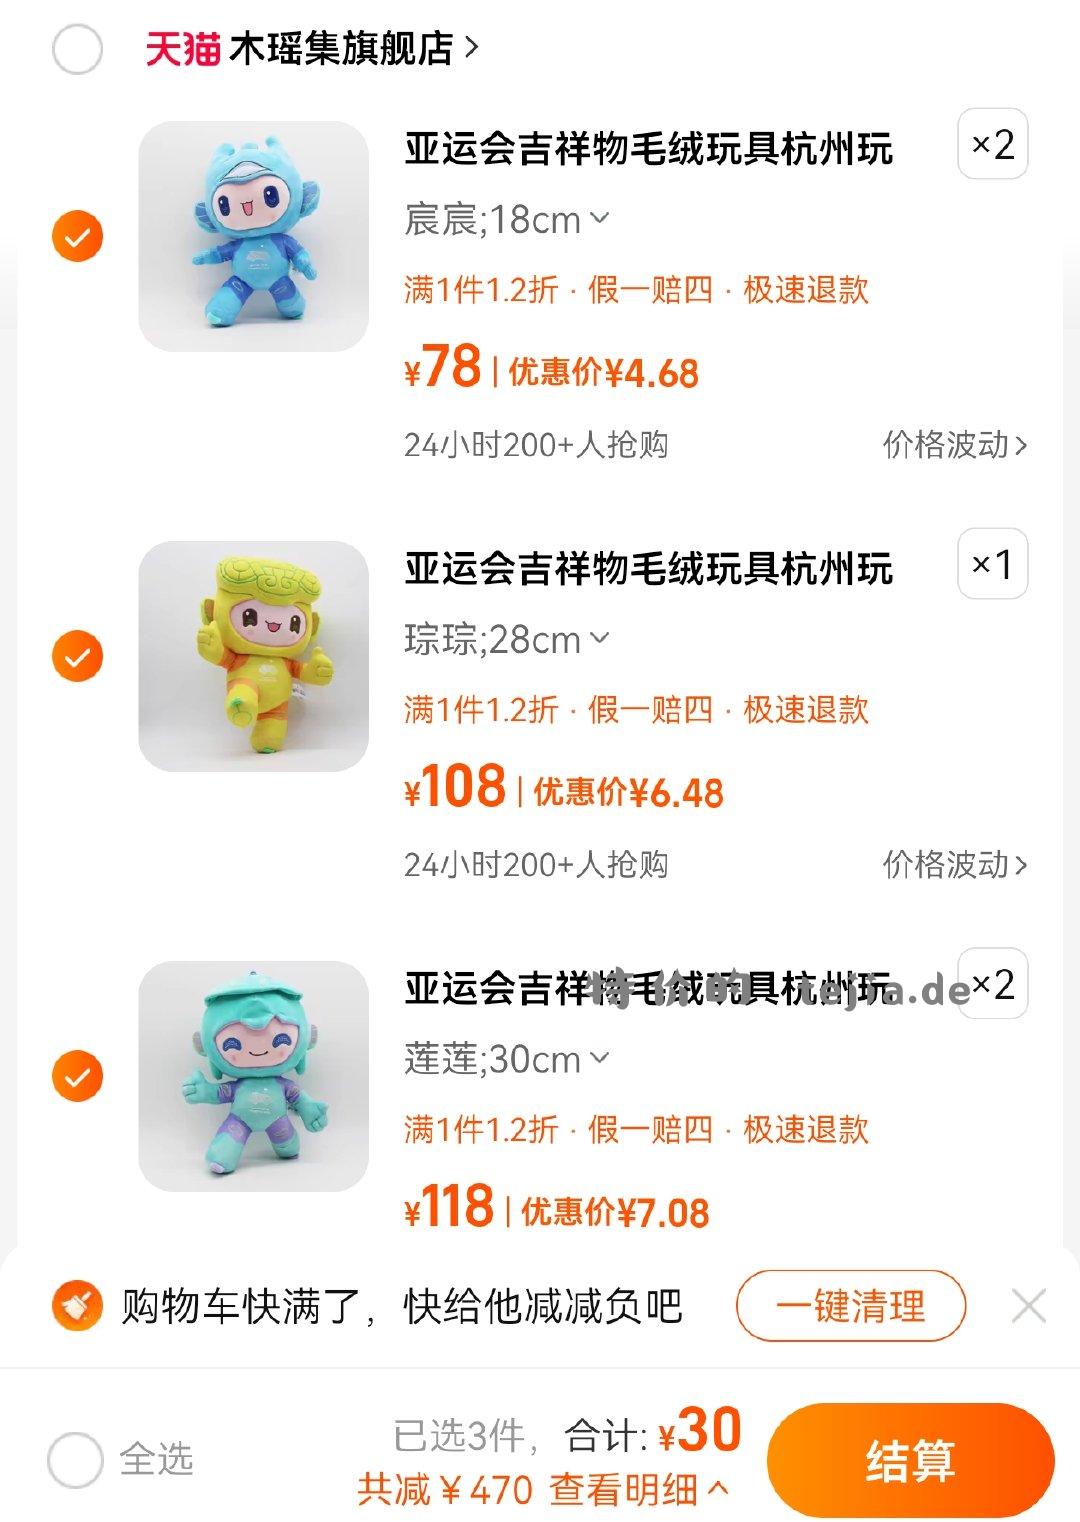 亚运会吉祥物 专区分享499-30 30买500 亚运会吉祥物毛绒玩具创意公仔玩偶套装杭州亚运会儿童礼物 - 特价的